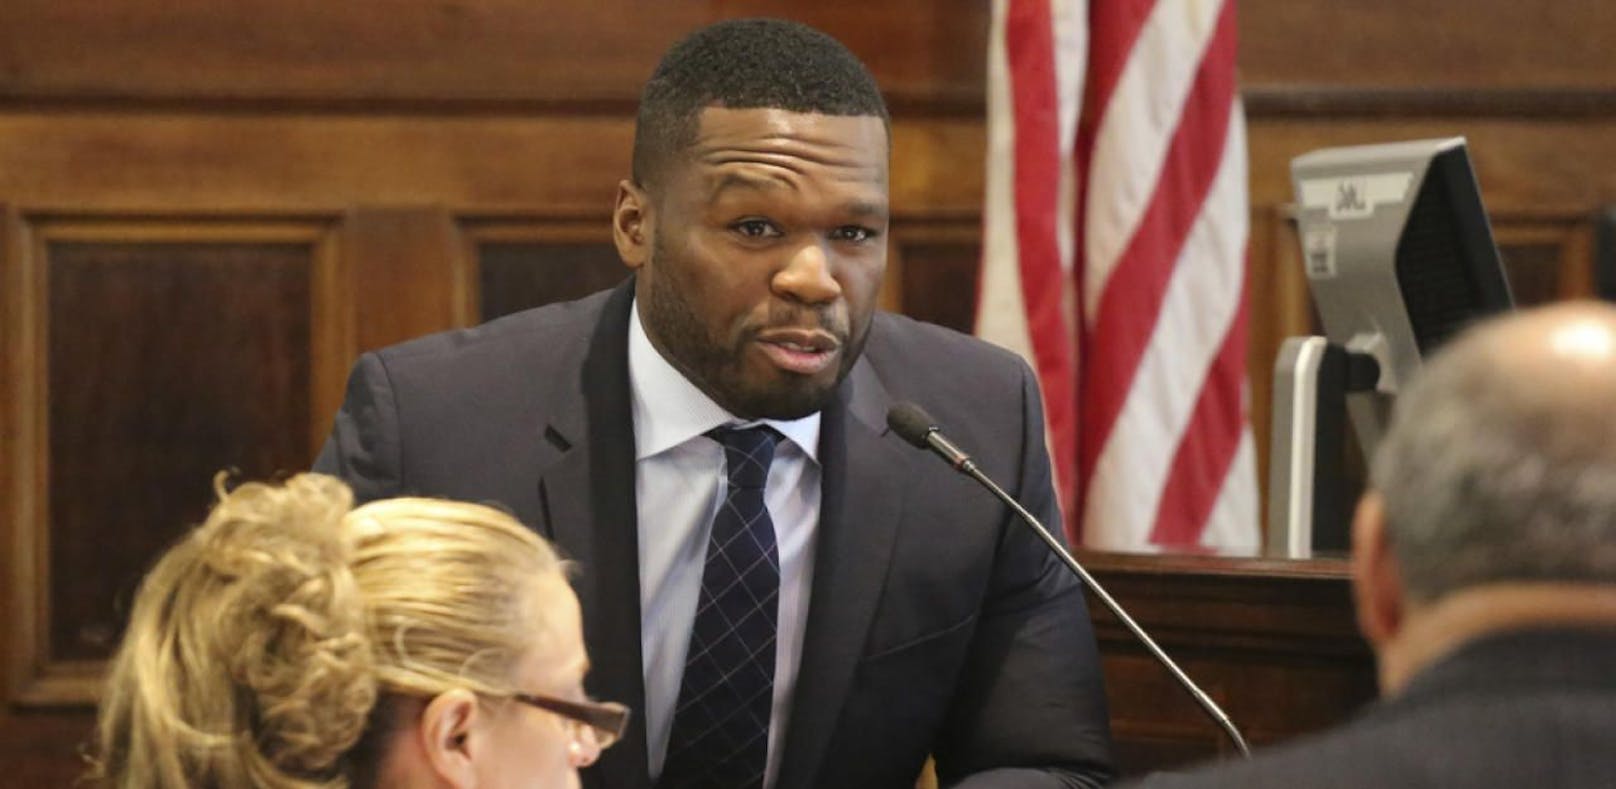 50 Cent stiehlt eigenes Foto - Fotograf klagt